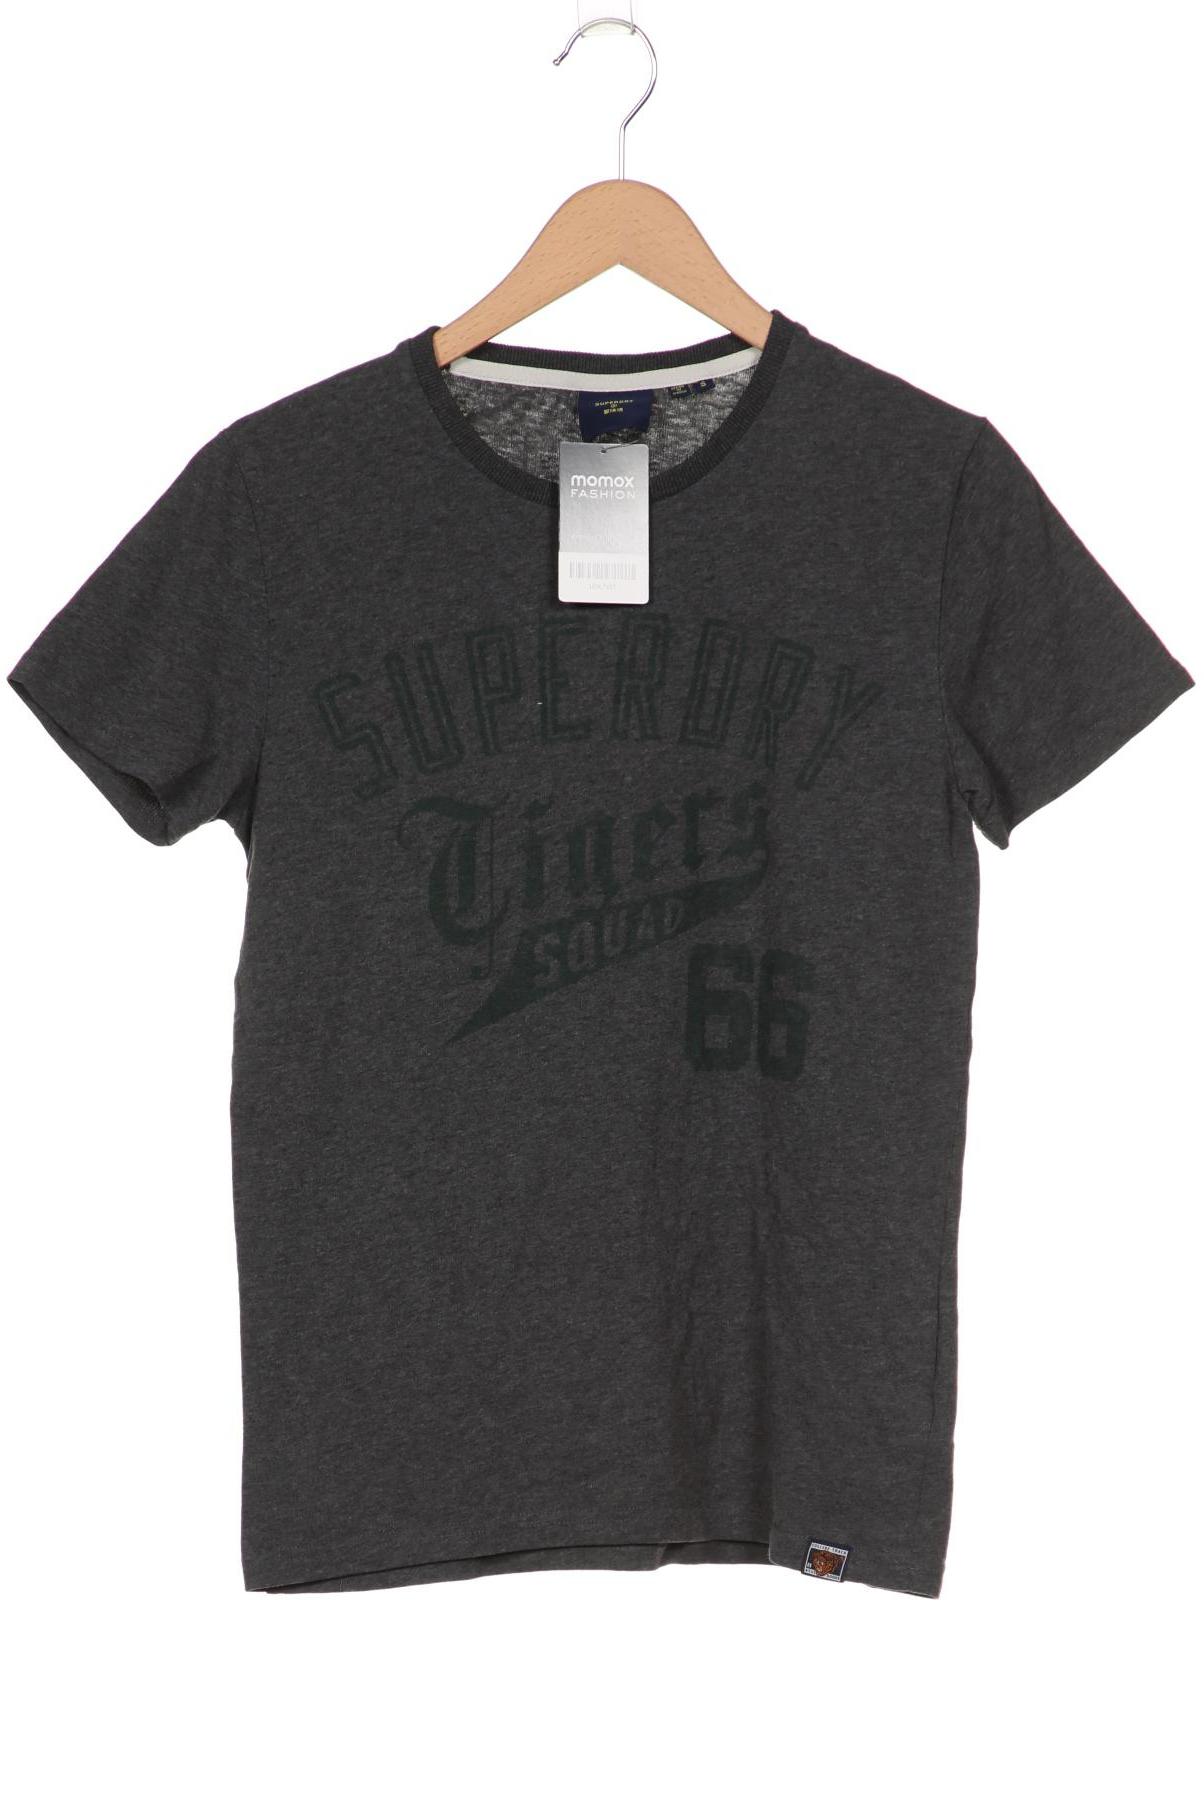 Superdry Herren T-Shirt, grau, Gr. 46 von Superdry